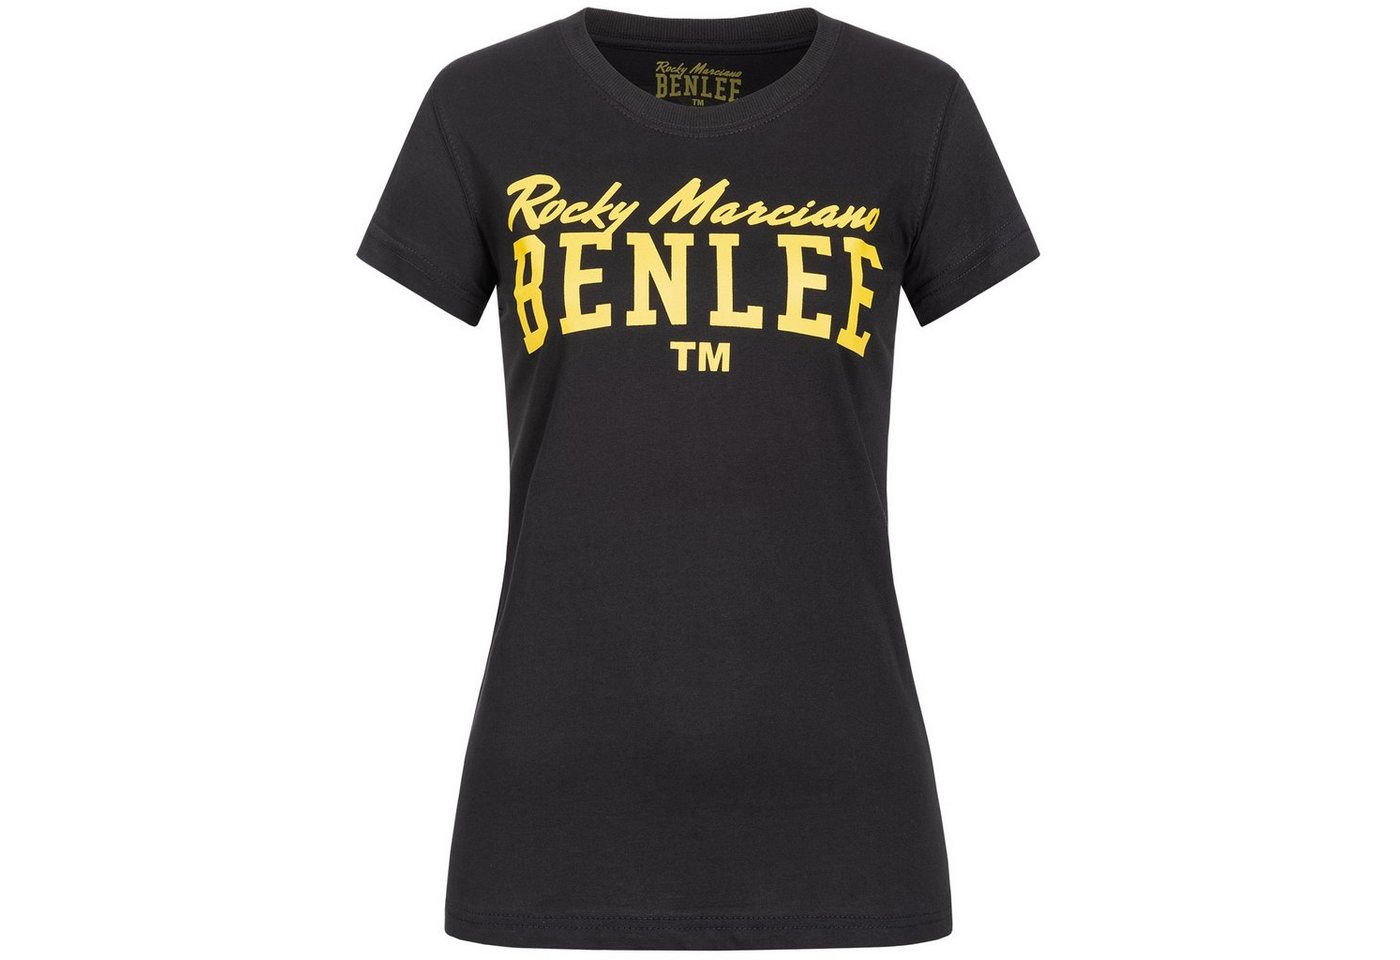 Benlee Rocky Marciano T-Shirt LADY LOGO von Benlee Rocky Marciano